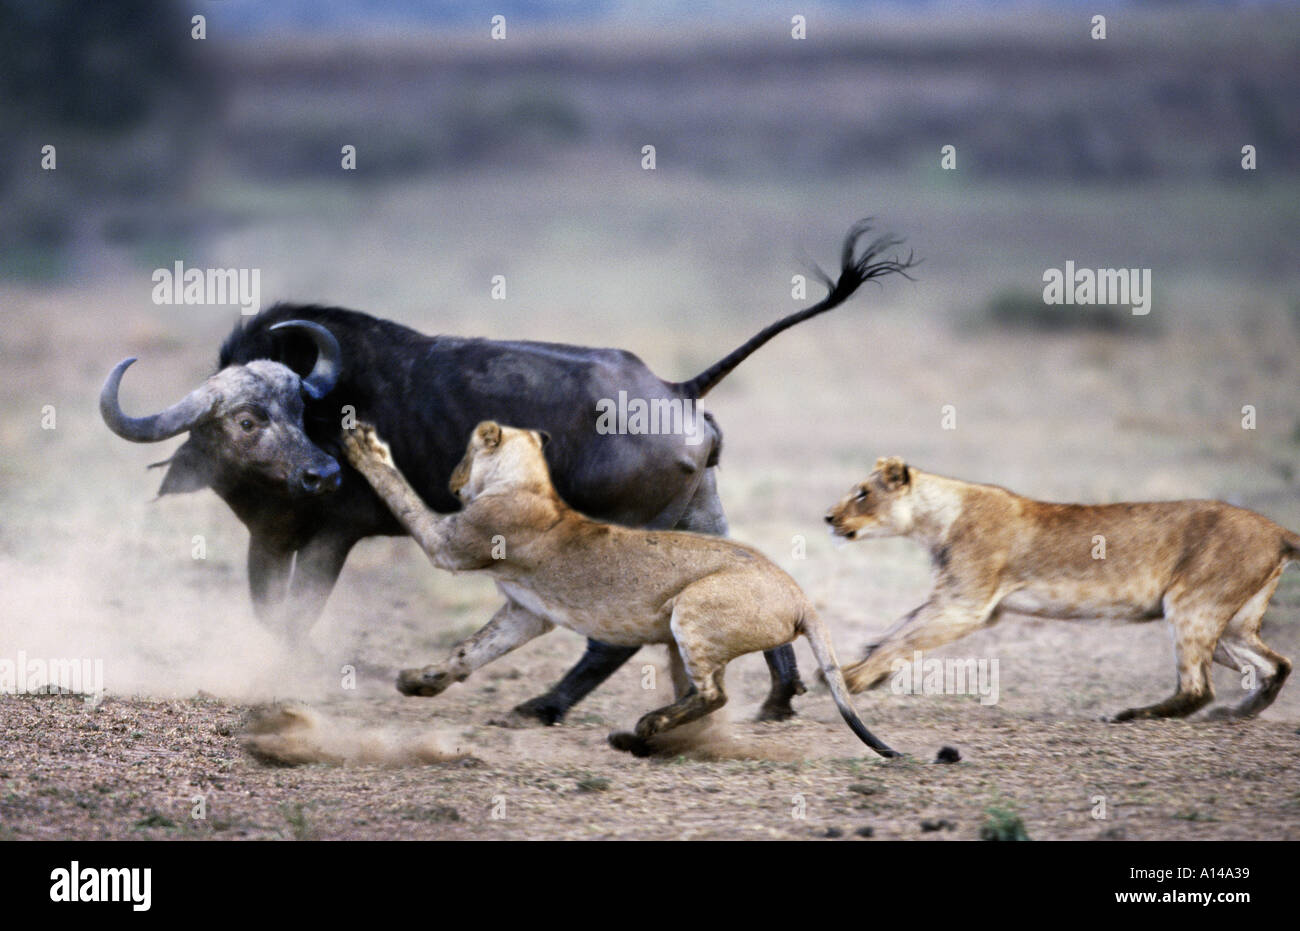 Конкуренция между хищниками. Соперничество животных. Конкуренция в природе. Конфликт между животными. Борьба животных в дикой природе.